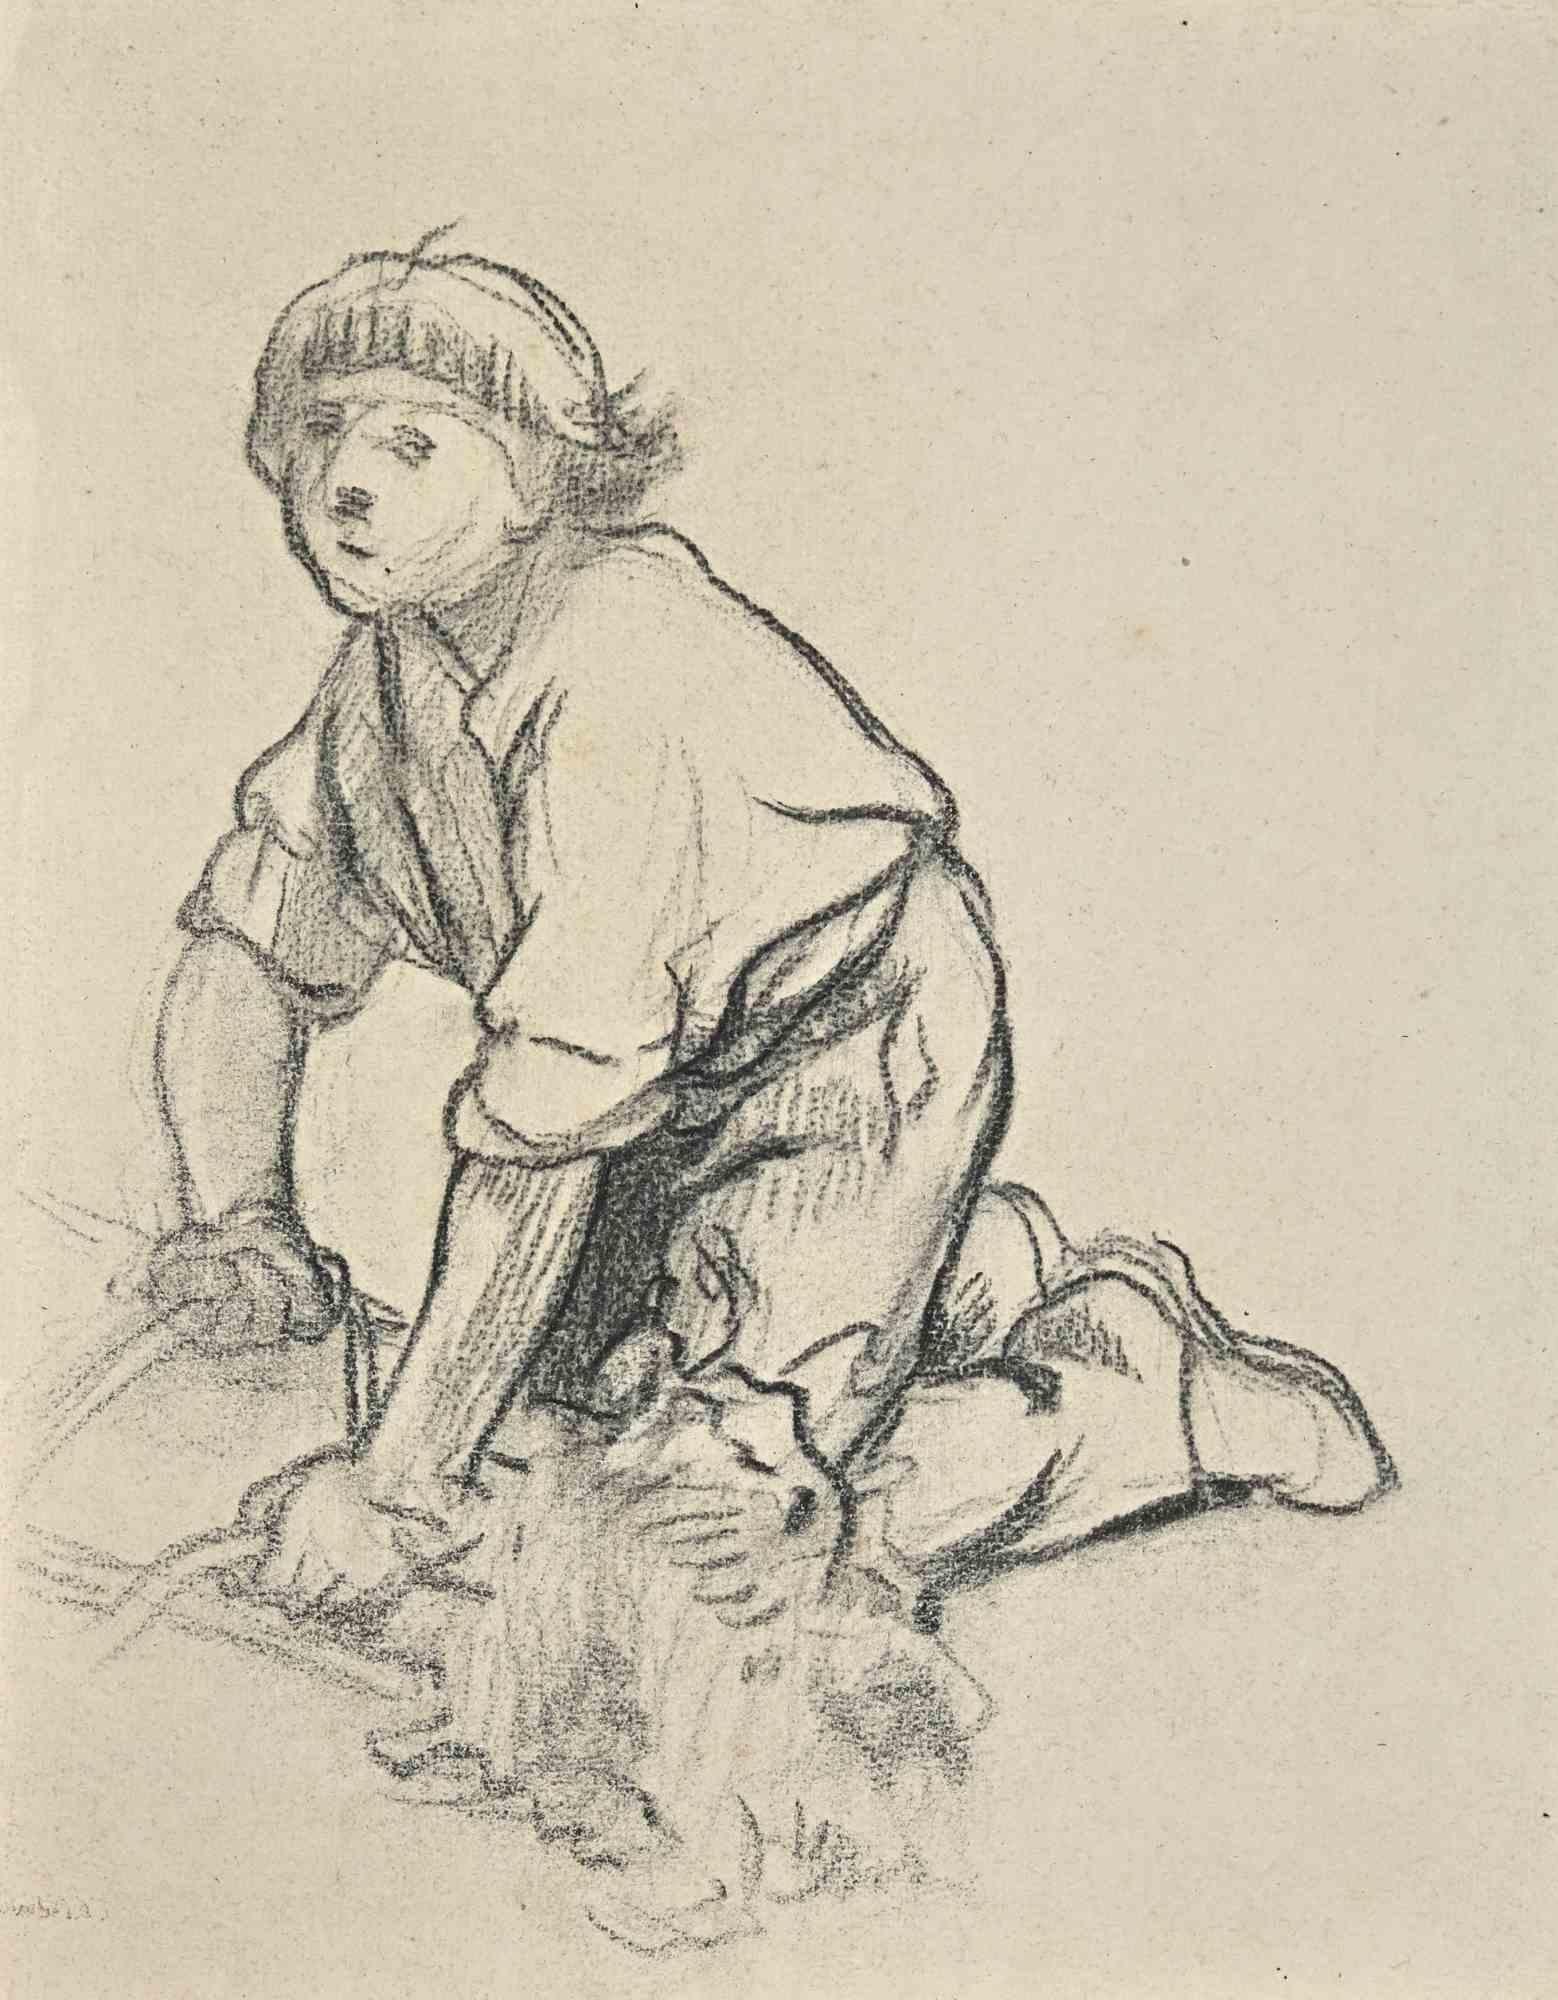 Working Child ist eine Zeichnung auf cremefarbenem Papier von Tibor Gertler aus der Mitte des 20. Jahrhunderts.

Zeichnung mit Kohle.

Guter Zustand, gealterte Ränder.

Das Kunstwerk ist einzigartig dargestellt sein Thema durch die Kombination der